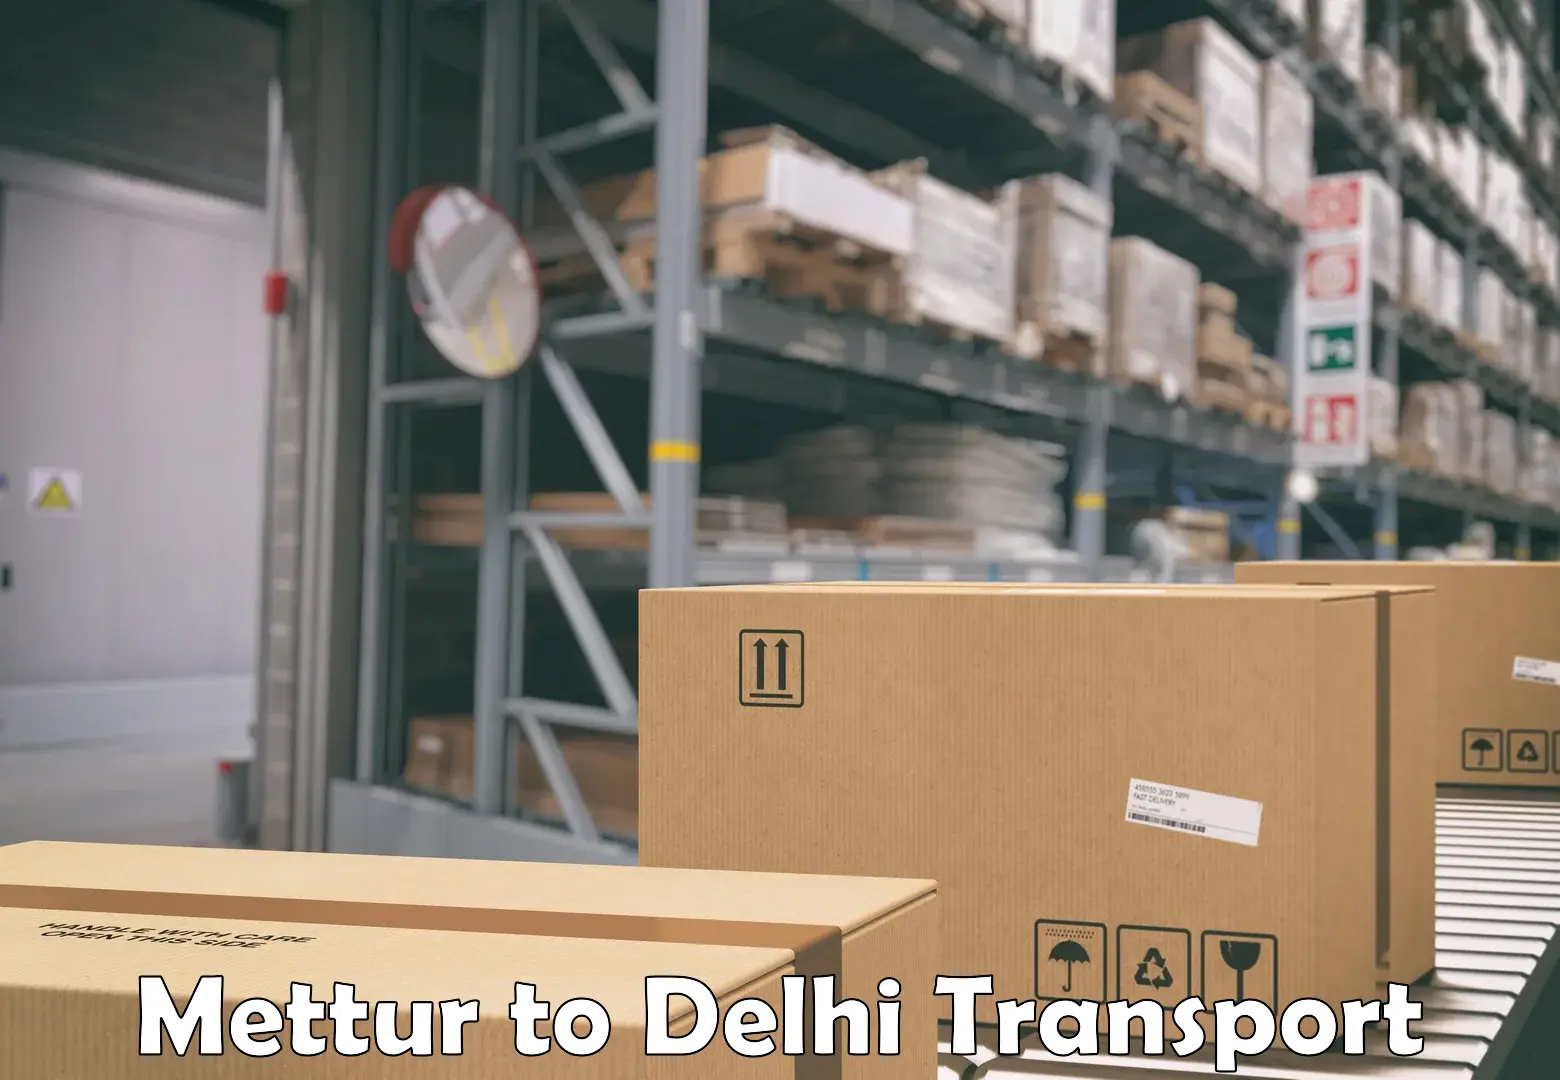 Online transport service Mettur to IIT Delhi